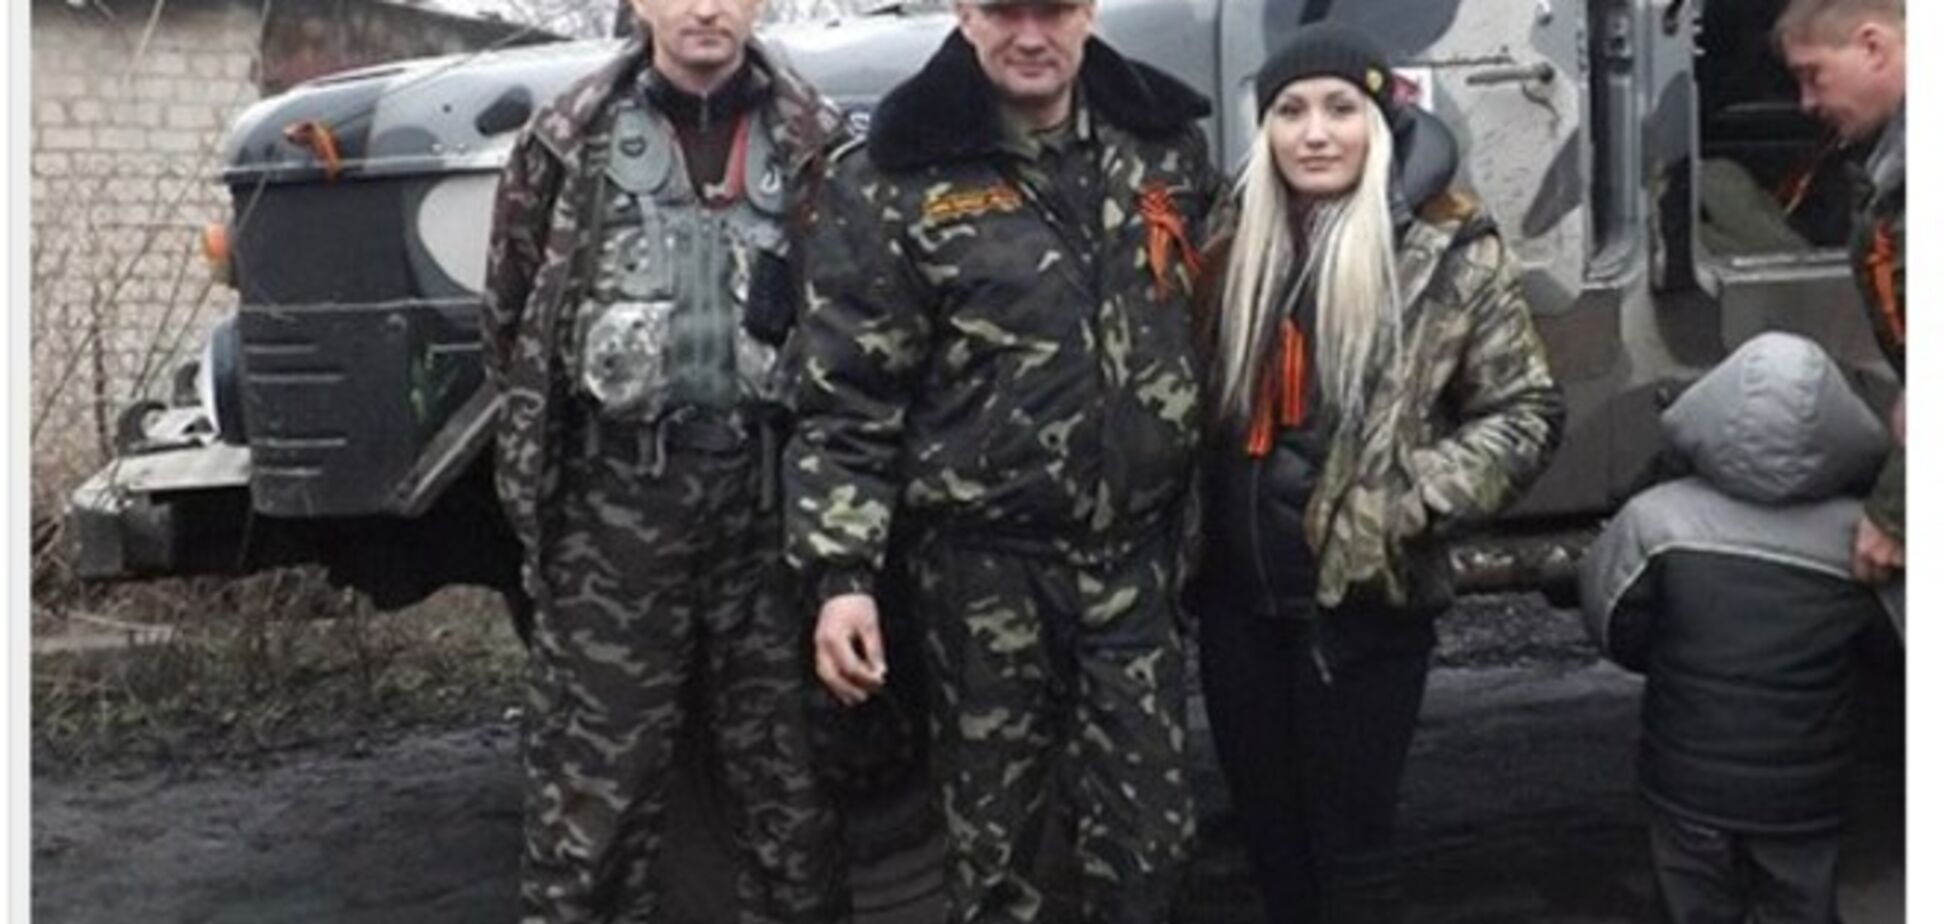 Не попавший в Раду покровитель луганских титушек всплыл в 'ЛНР' и забанил сына-'укрофашиста' в соцсети